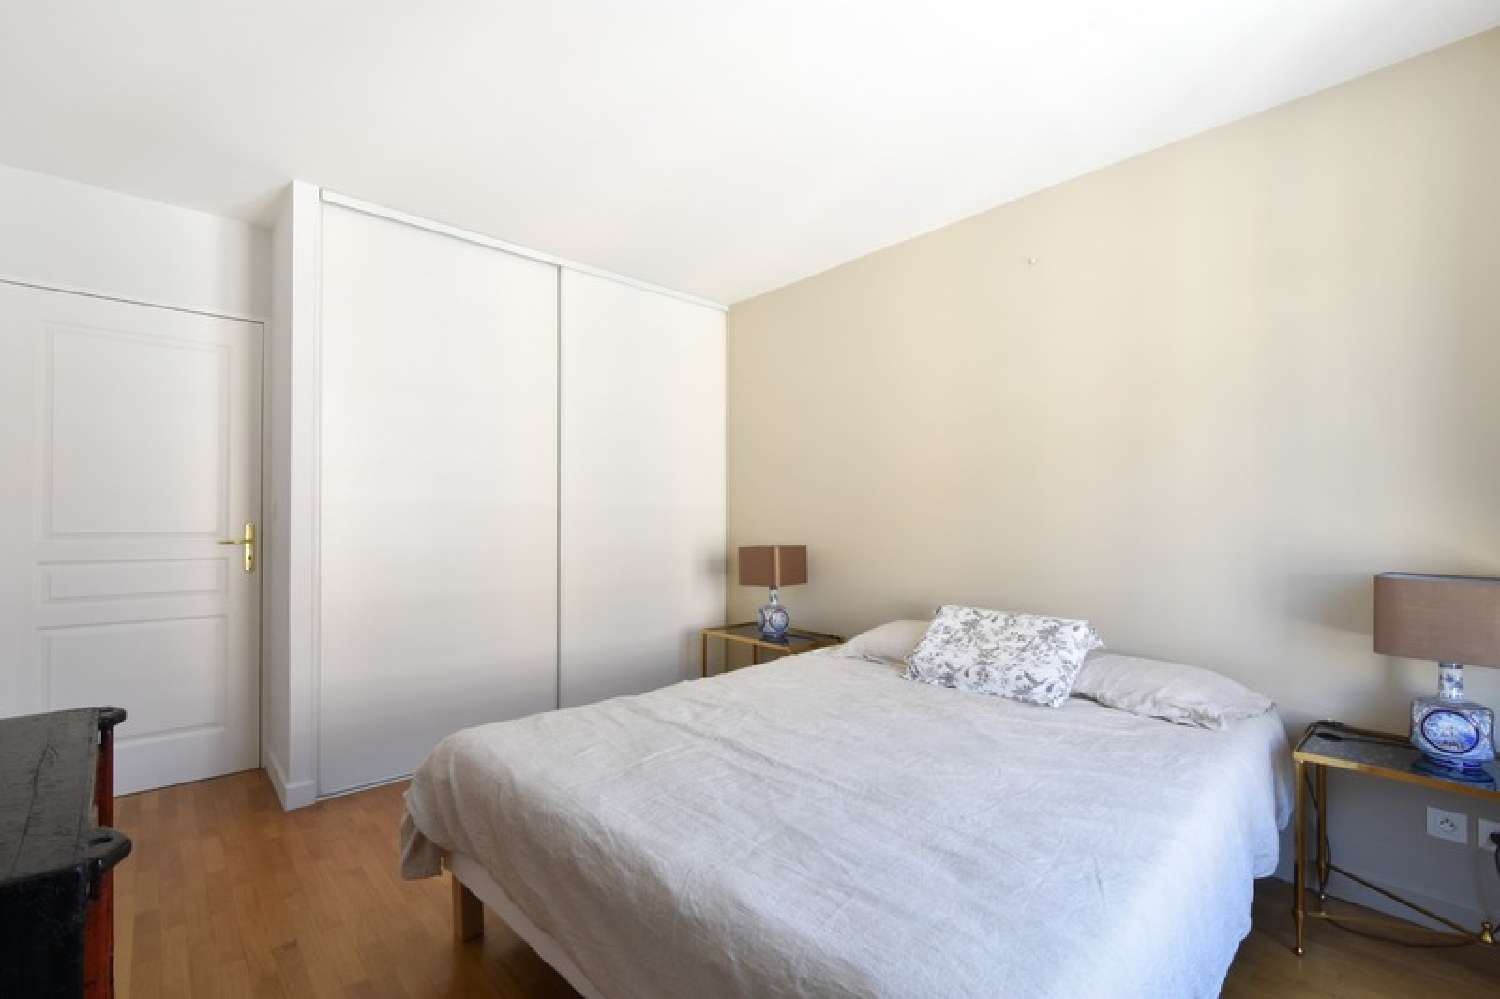  kaufen Wohnung/ Apartment Lyon 1er Arrondissement Rhône 3